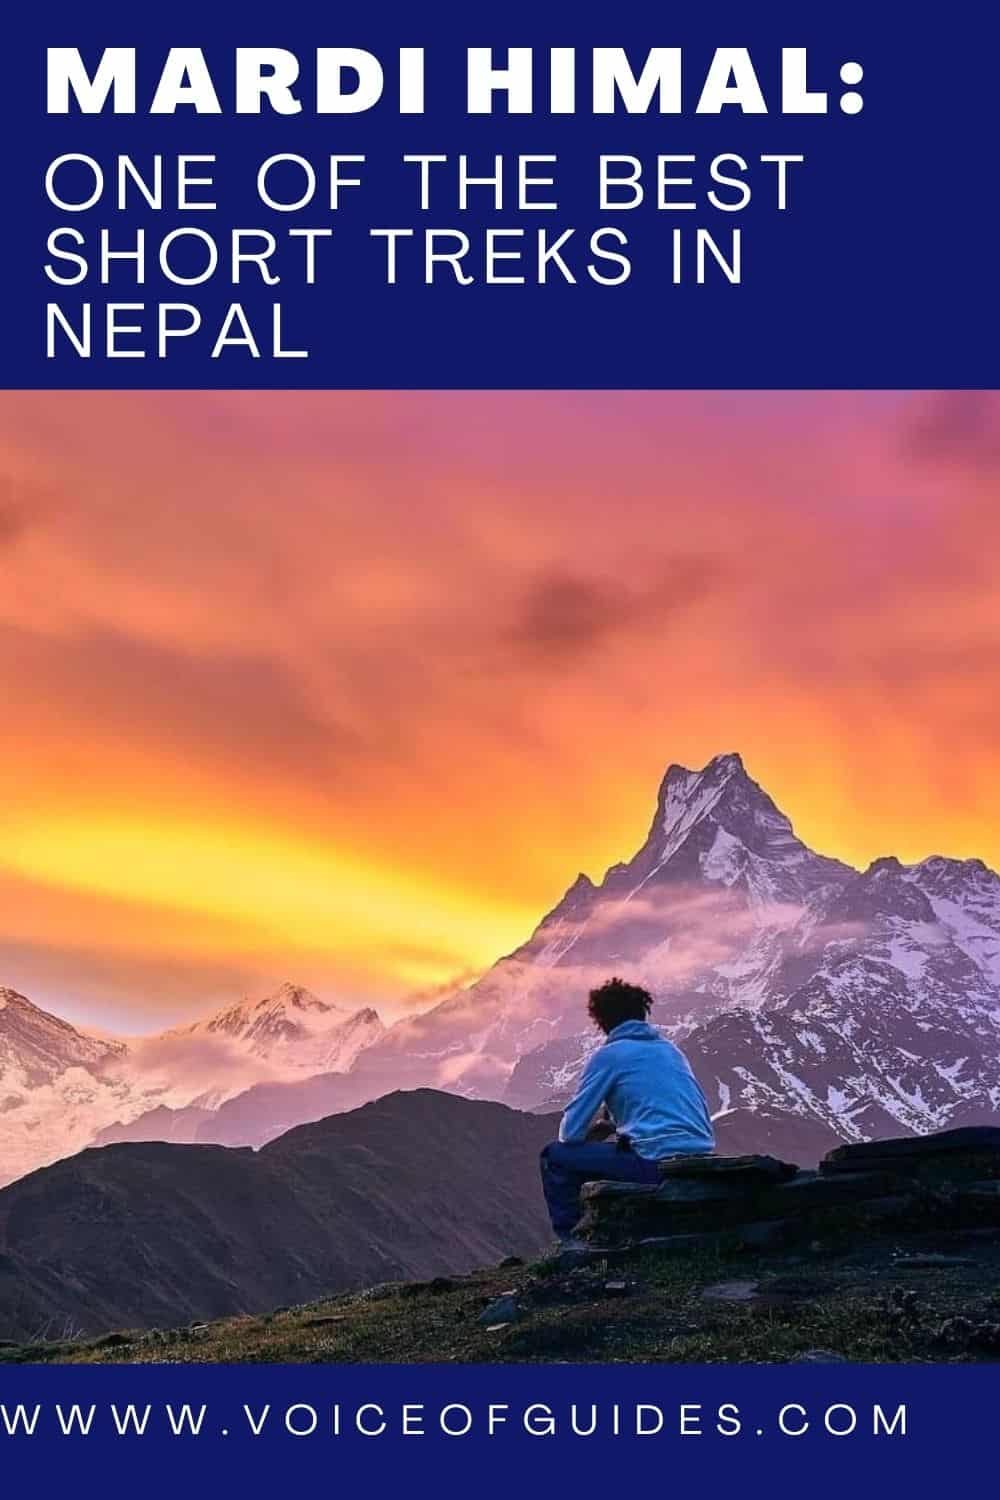 Mardi Himal is one of the best short treks in Nepal